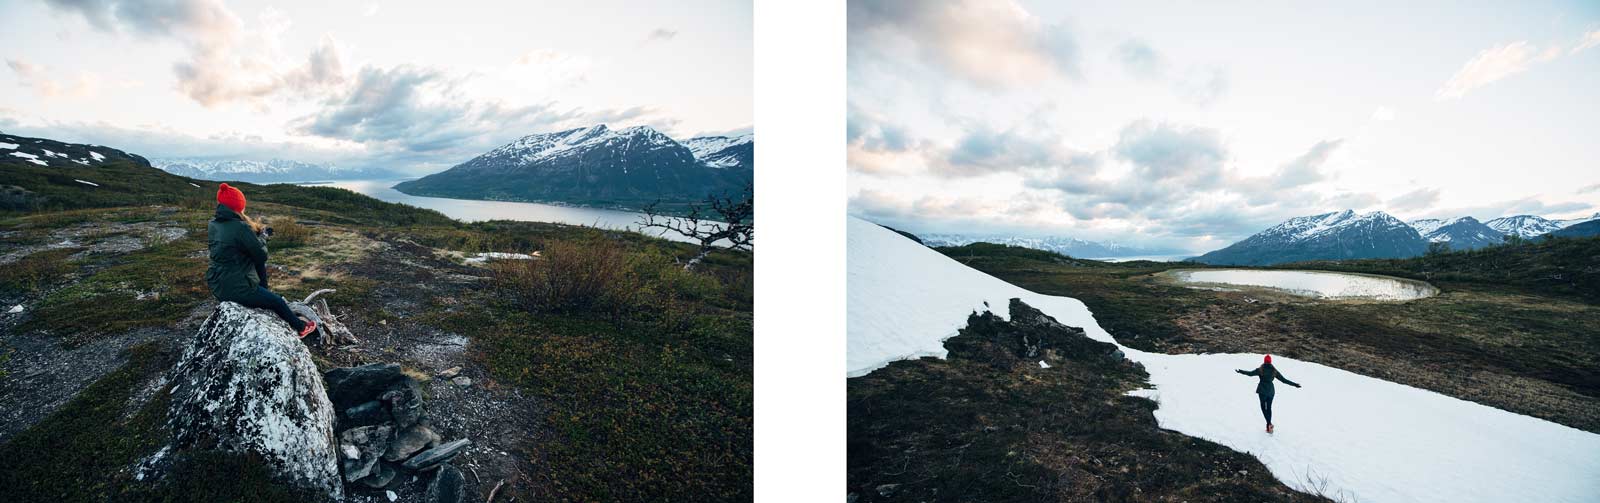 randonnée manndalen norvege